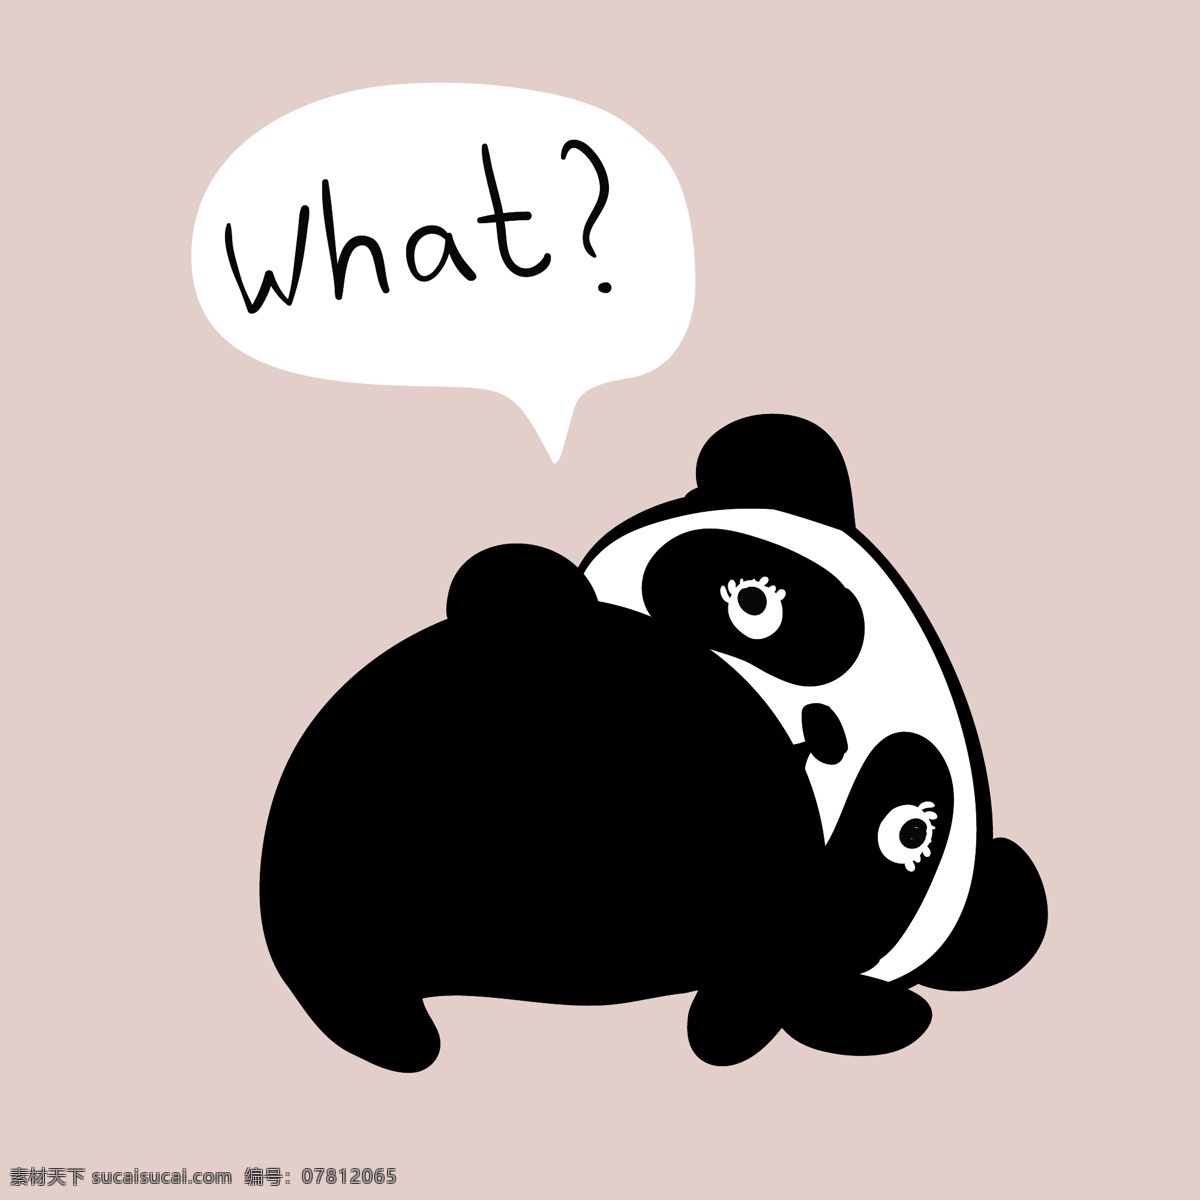 疑惑 小熊猫 卡通 动物 粉色 平面素材 设计素材 生活 矢量素材 温暖 熊猫 艺术